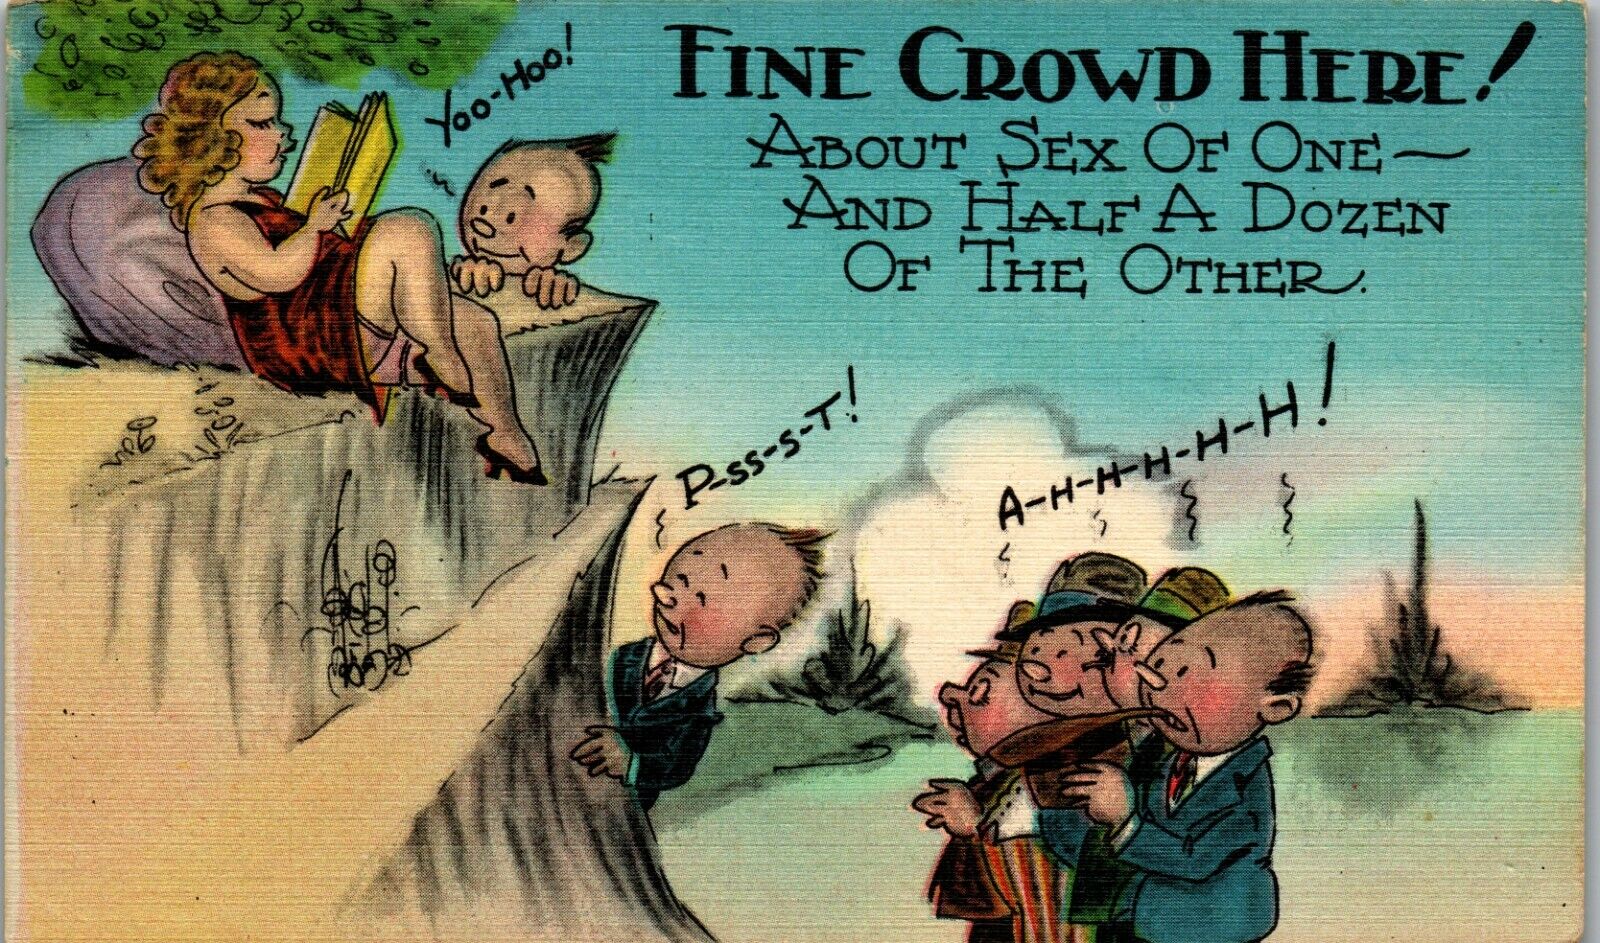 Sex of One Half Dozen Other Fine Crowd 1940\'s Era Humor Vintage Postcard